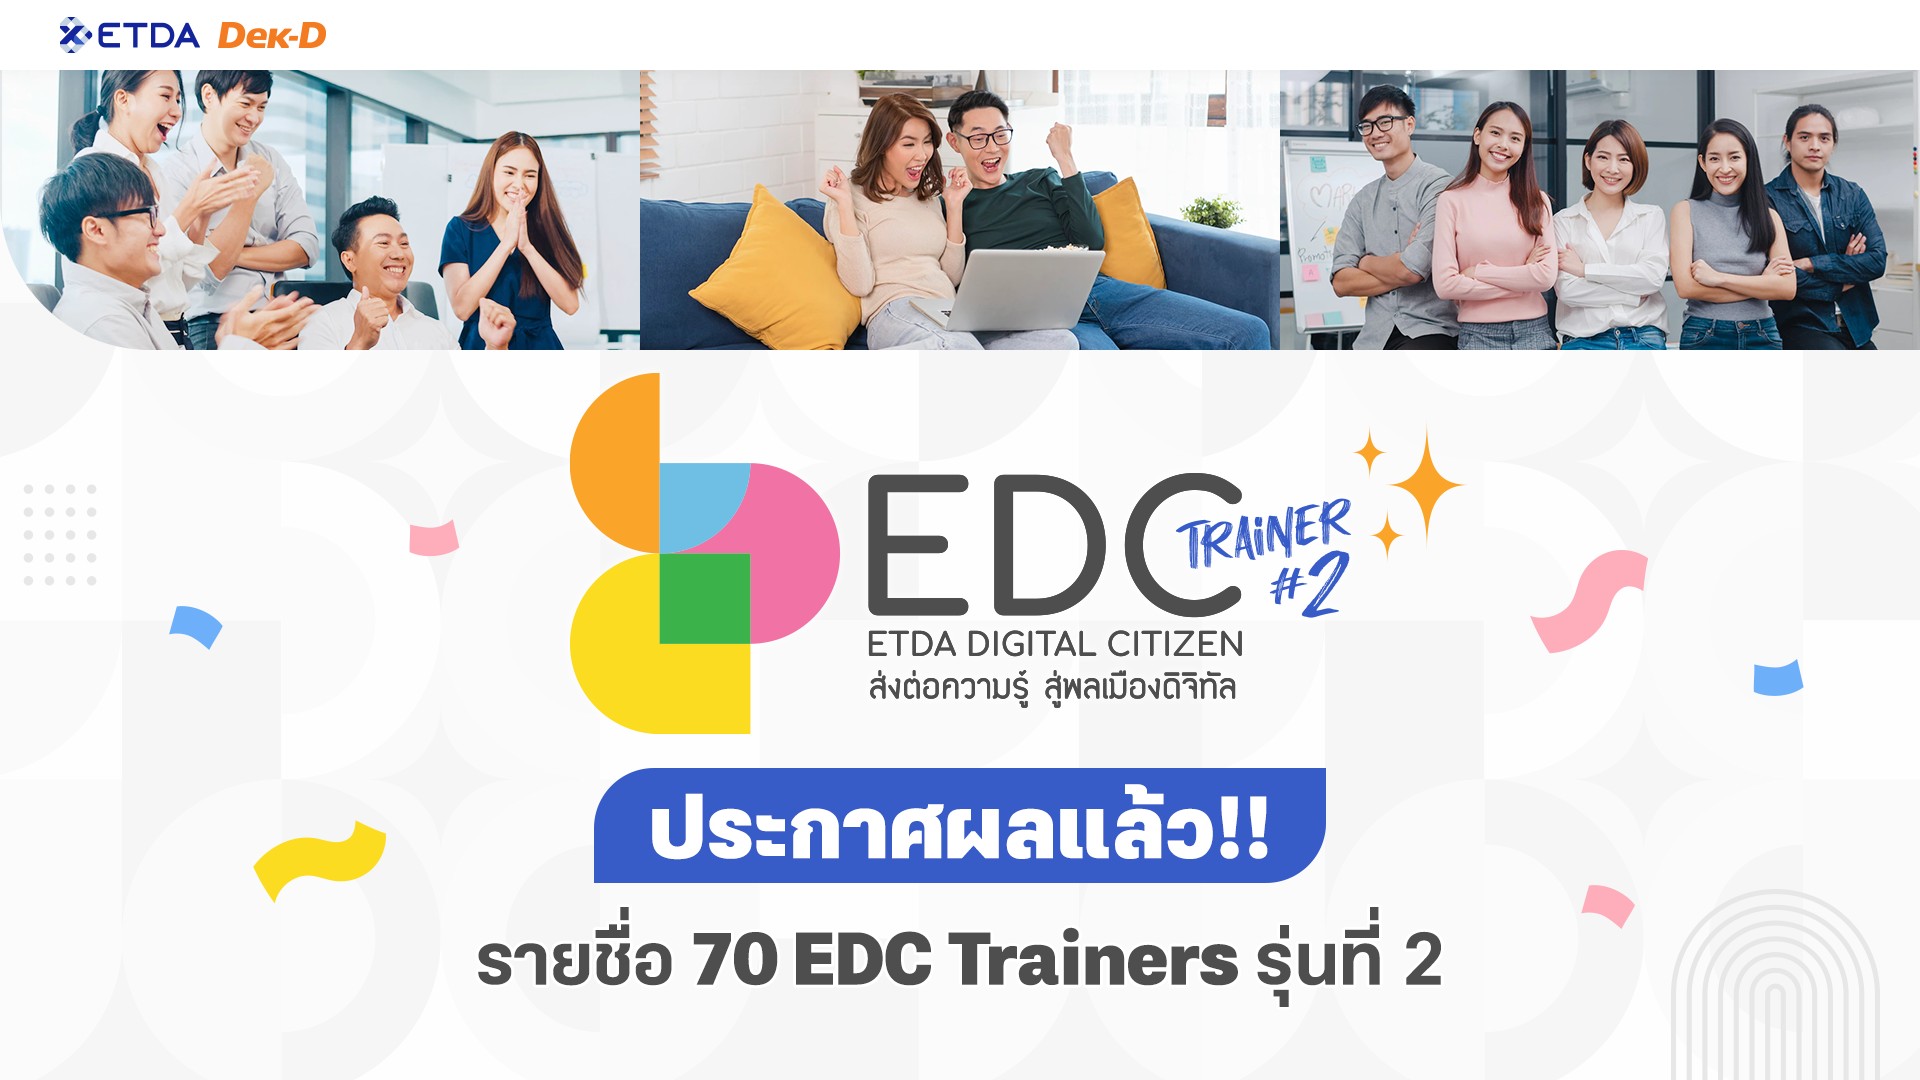 ขอแสดงความยินดีกับ 70  ท่าน ที่ผ่านเข้ารอบเป็น ‘ETDA Digital Citizen Trainer' หรือ EDC Trainer รุ่นที่ 2 ผู้มีใจรักส่งต่อความรู้สู่สังคมยุคดิจิทัล